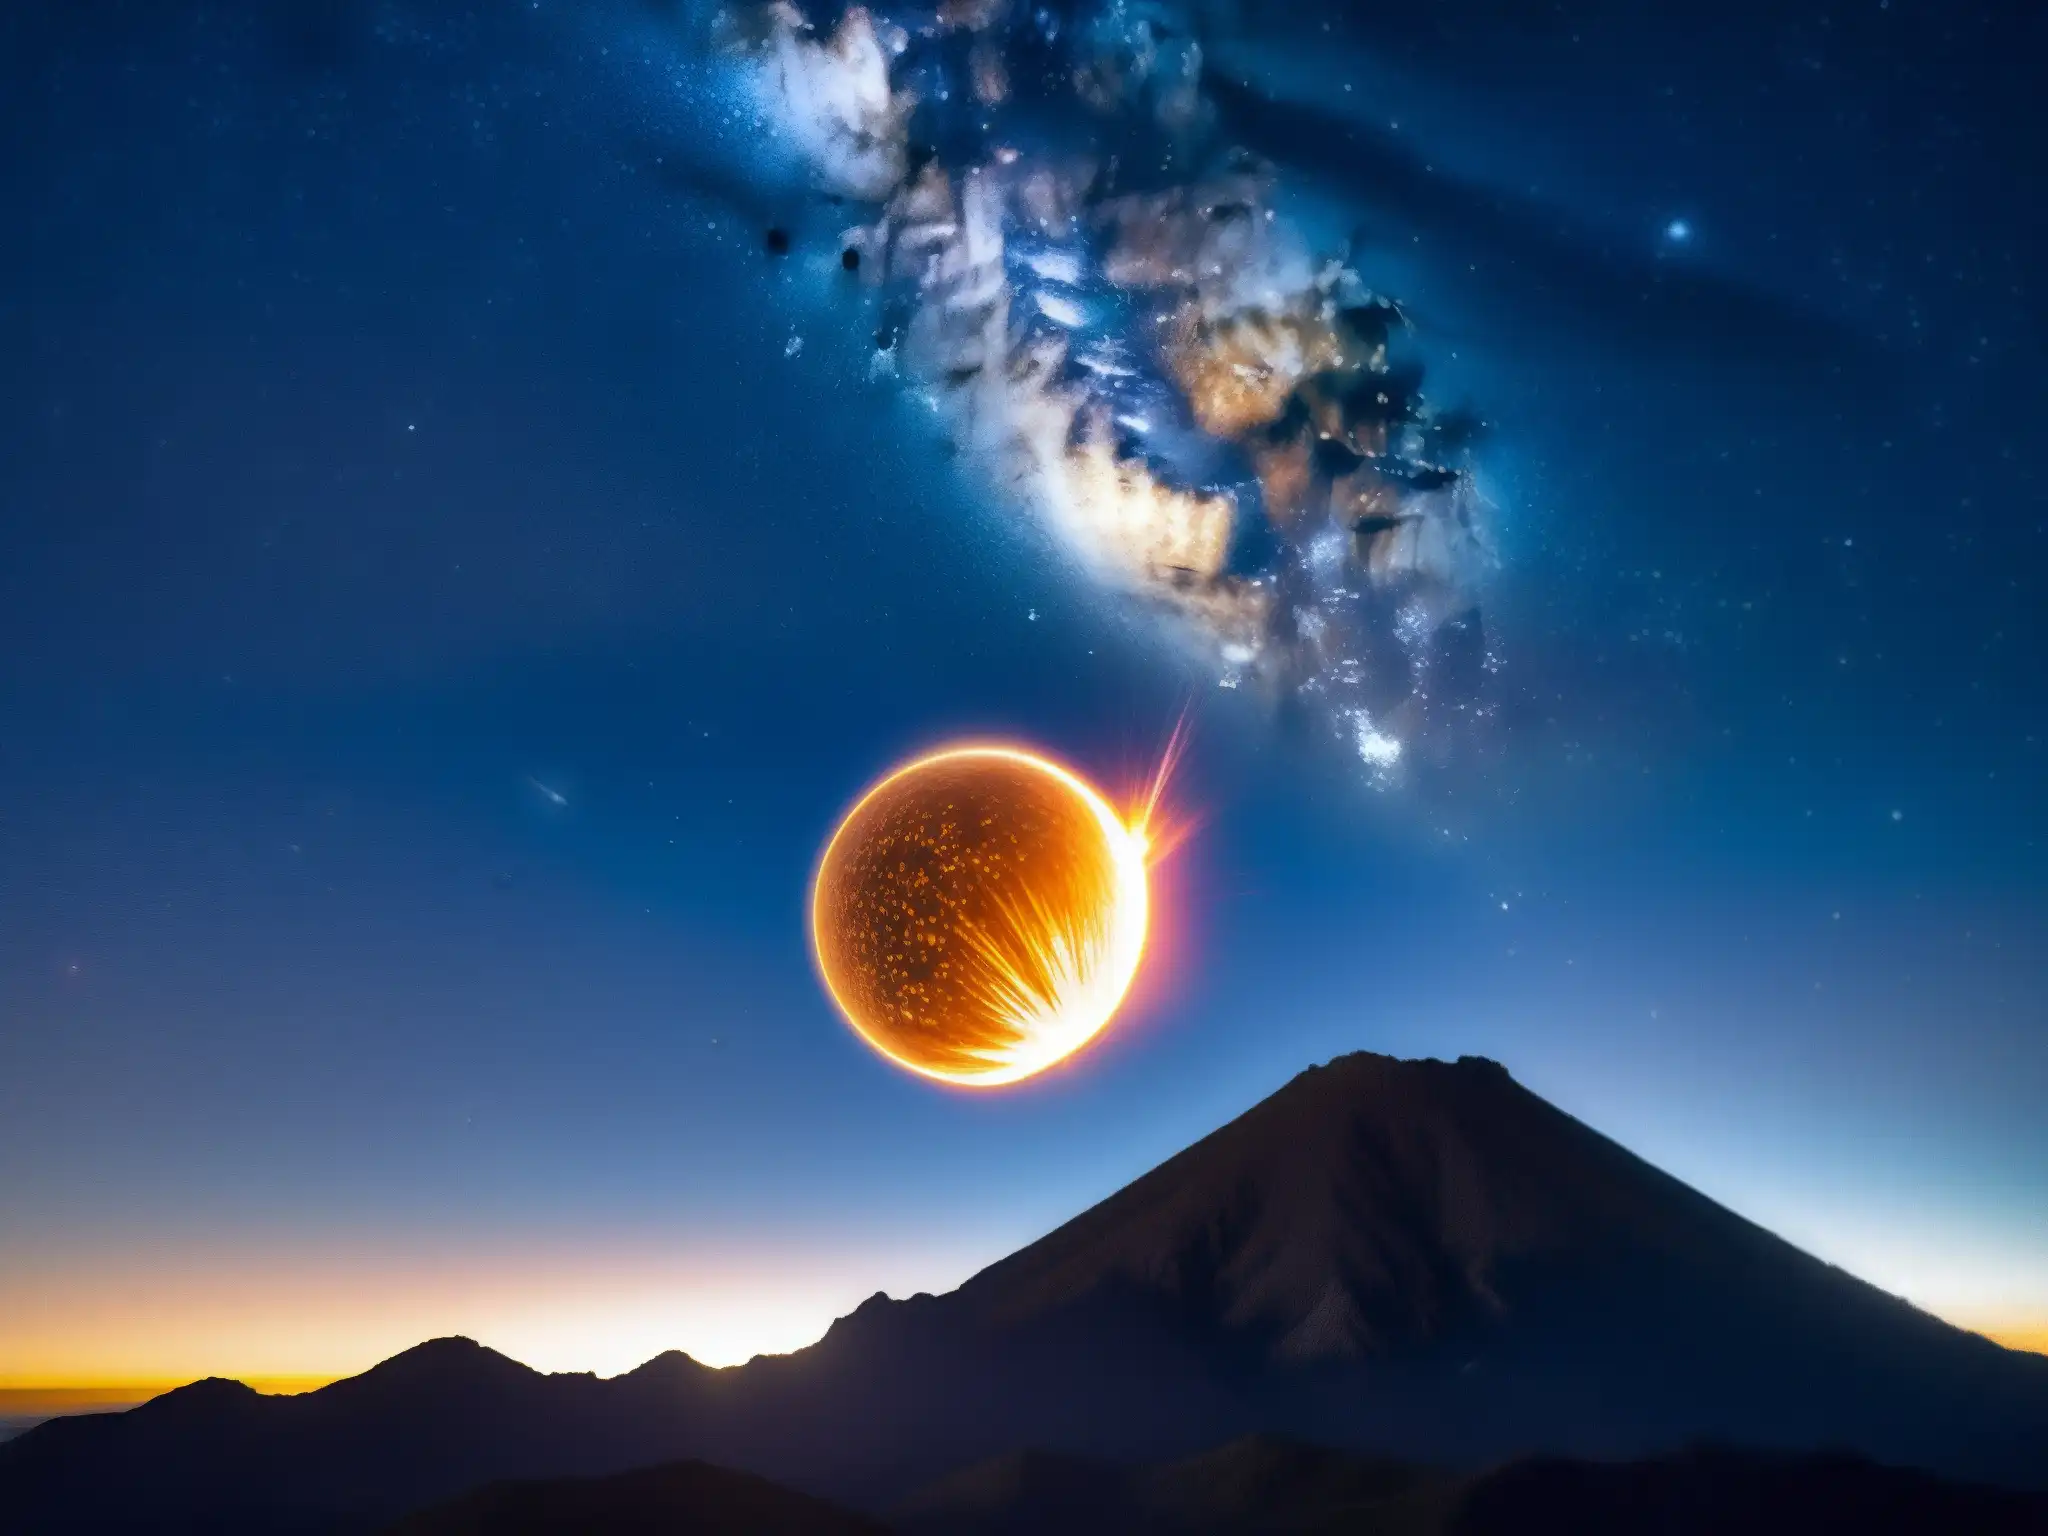 Una impresionante bola de fuego atraviesa el cielo nocturno de México, creando un espectáculo misterioso y sobrenatural